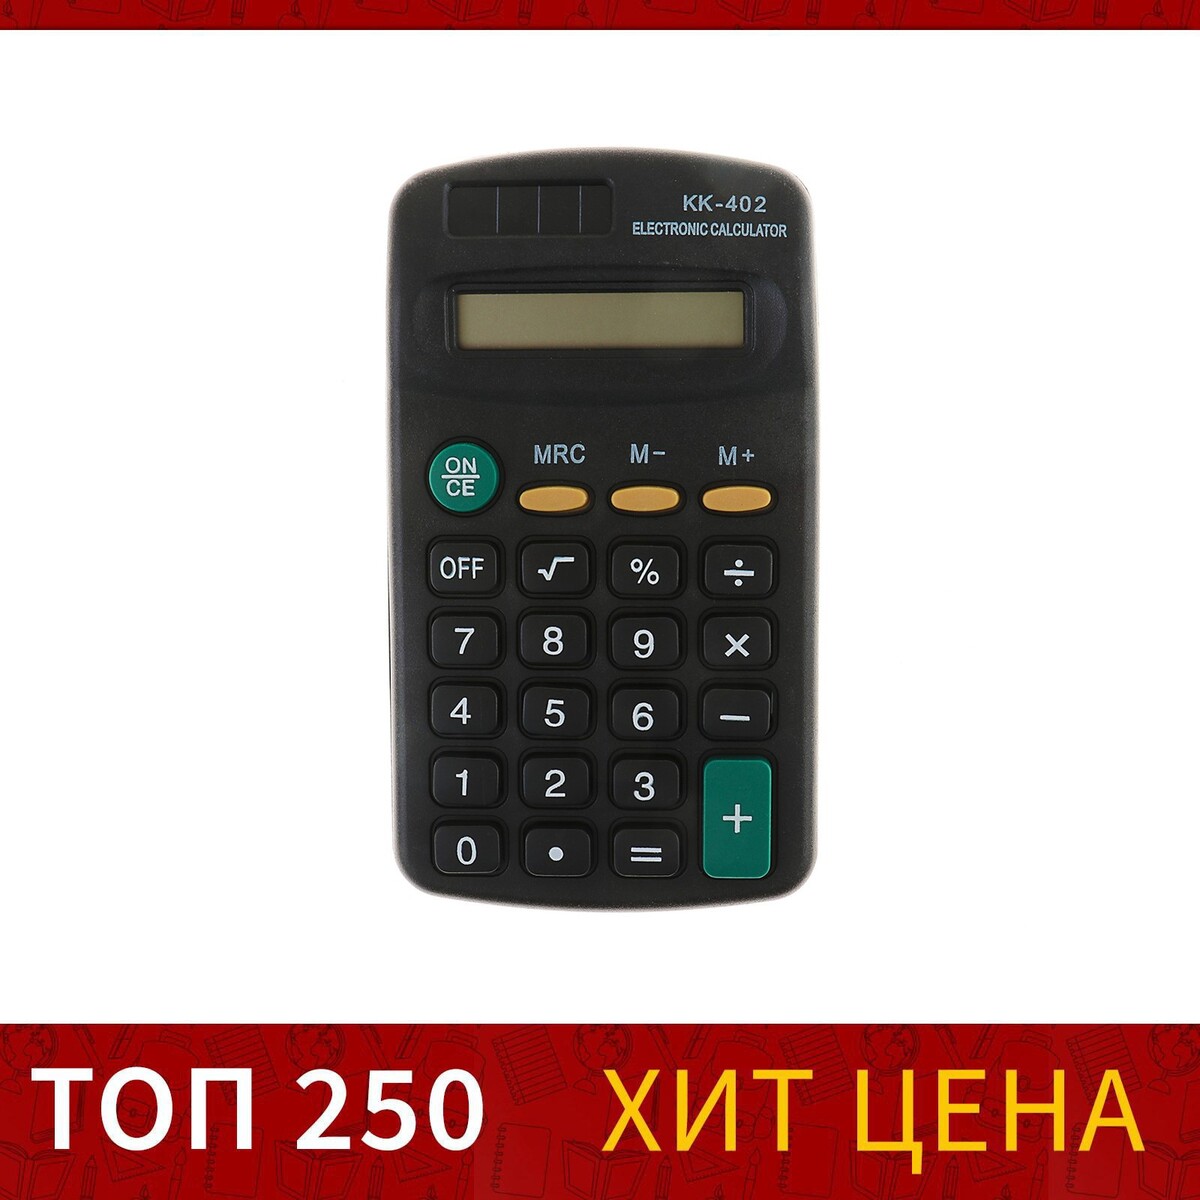 Калькулятор карманный, 8 - разрядный, kk - 402, работает от батарейки калькулятор карманный 8 разрядный kk 402 работает от батарейки